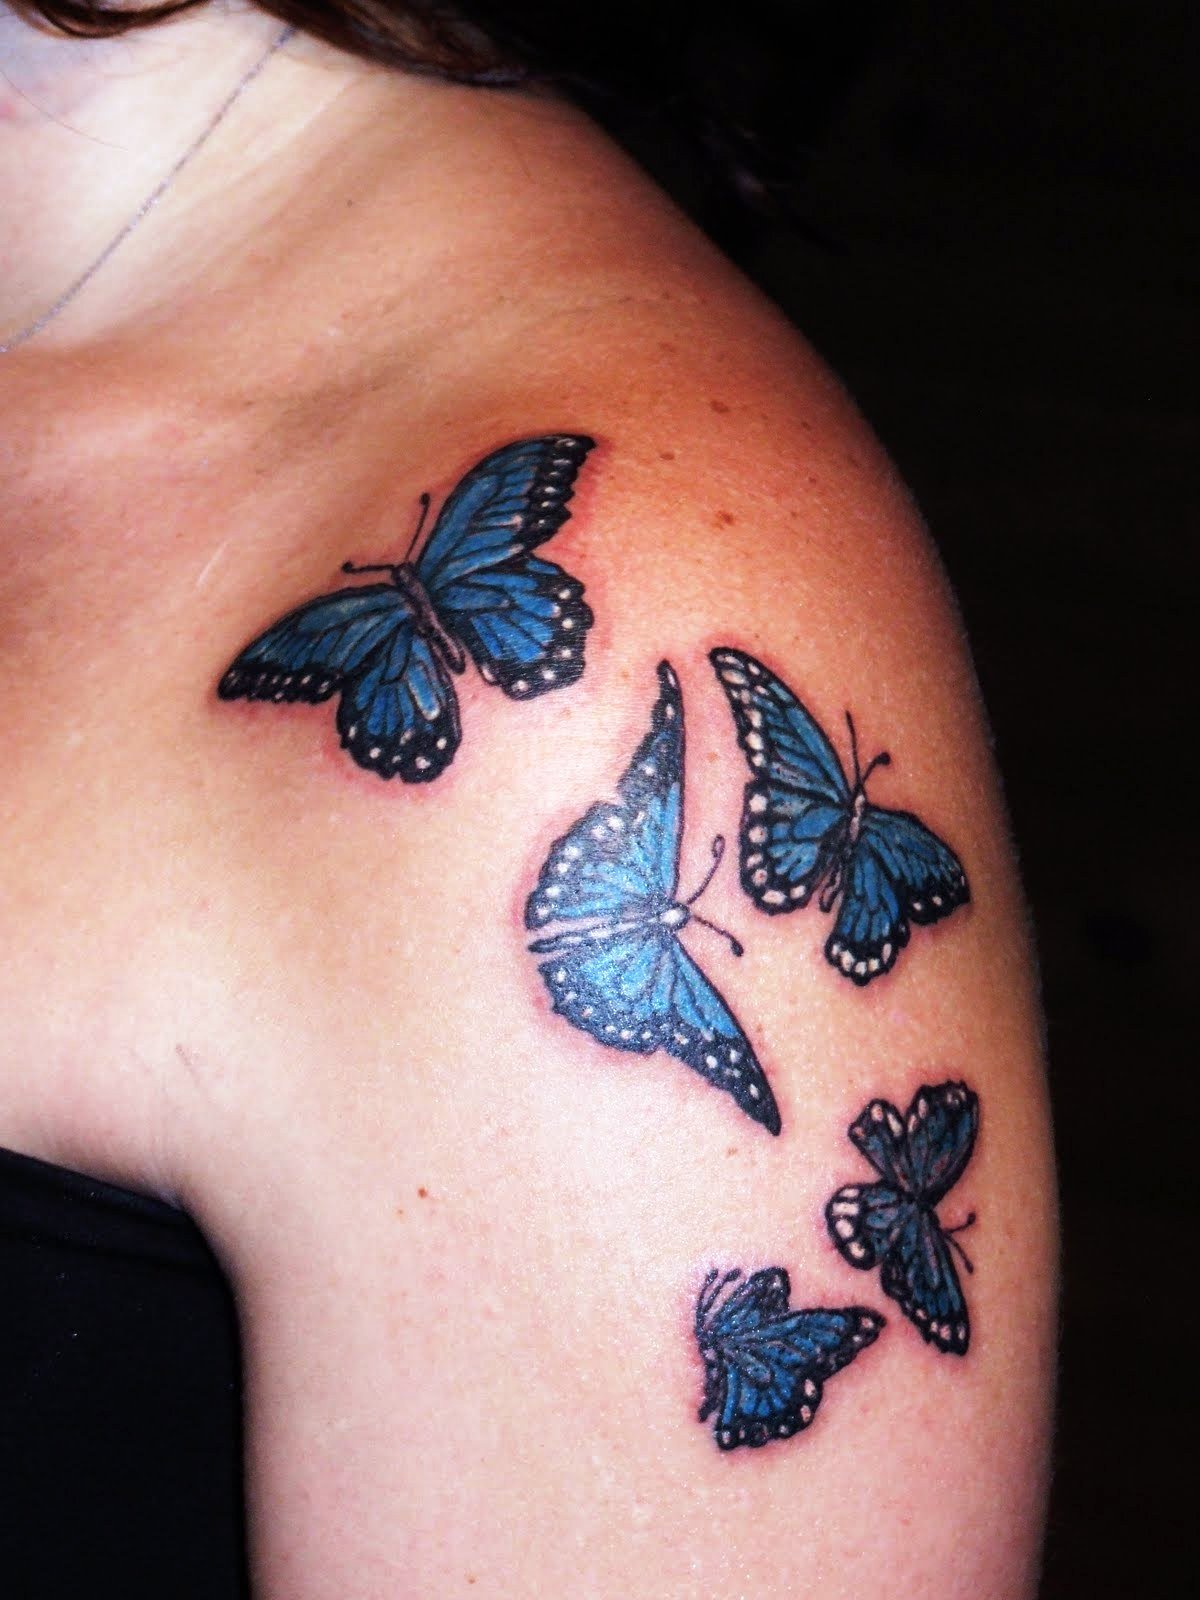 4-butterfly tattoo ideas